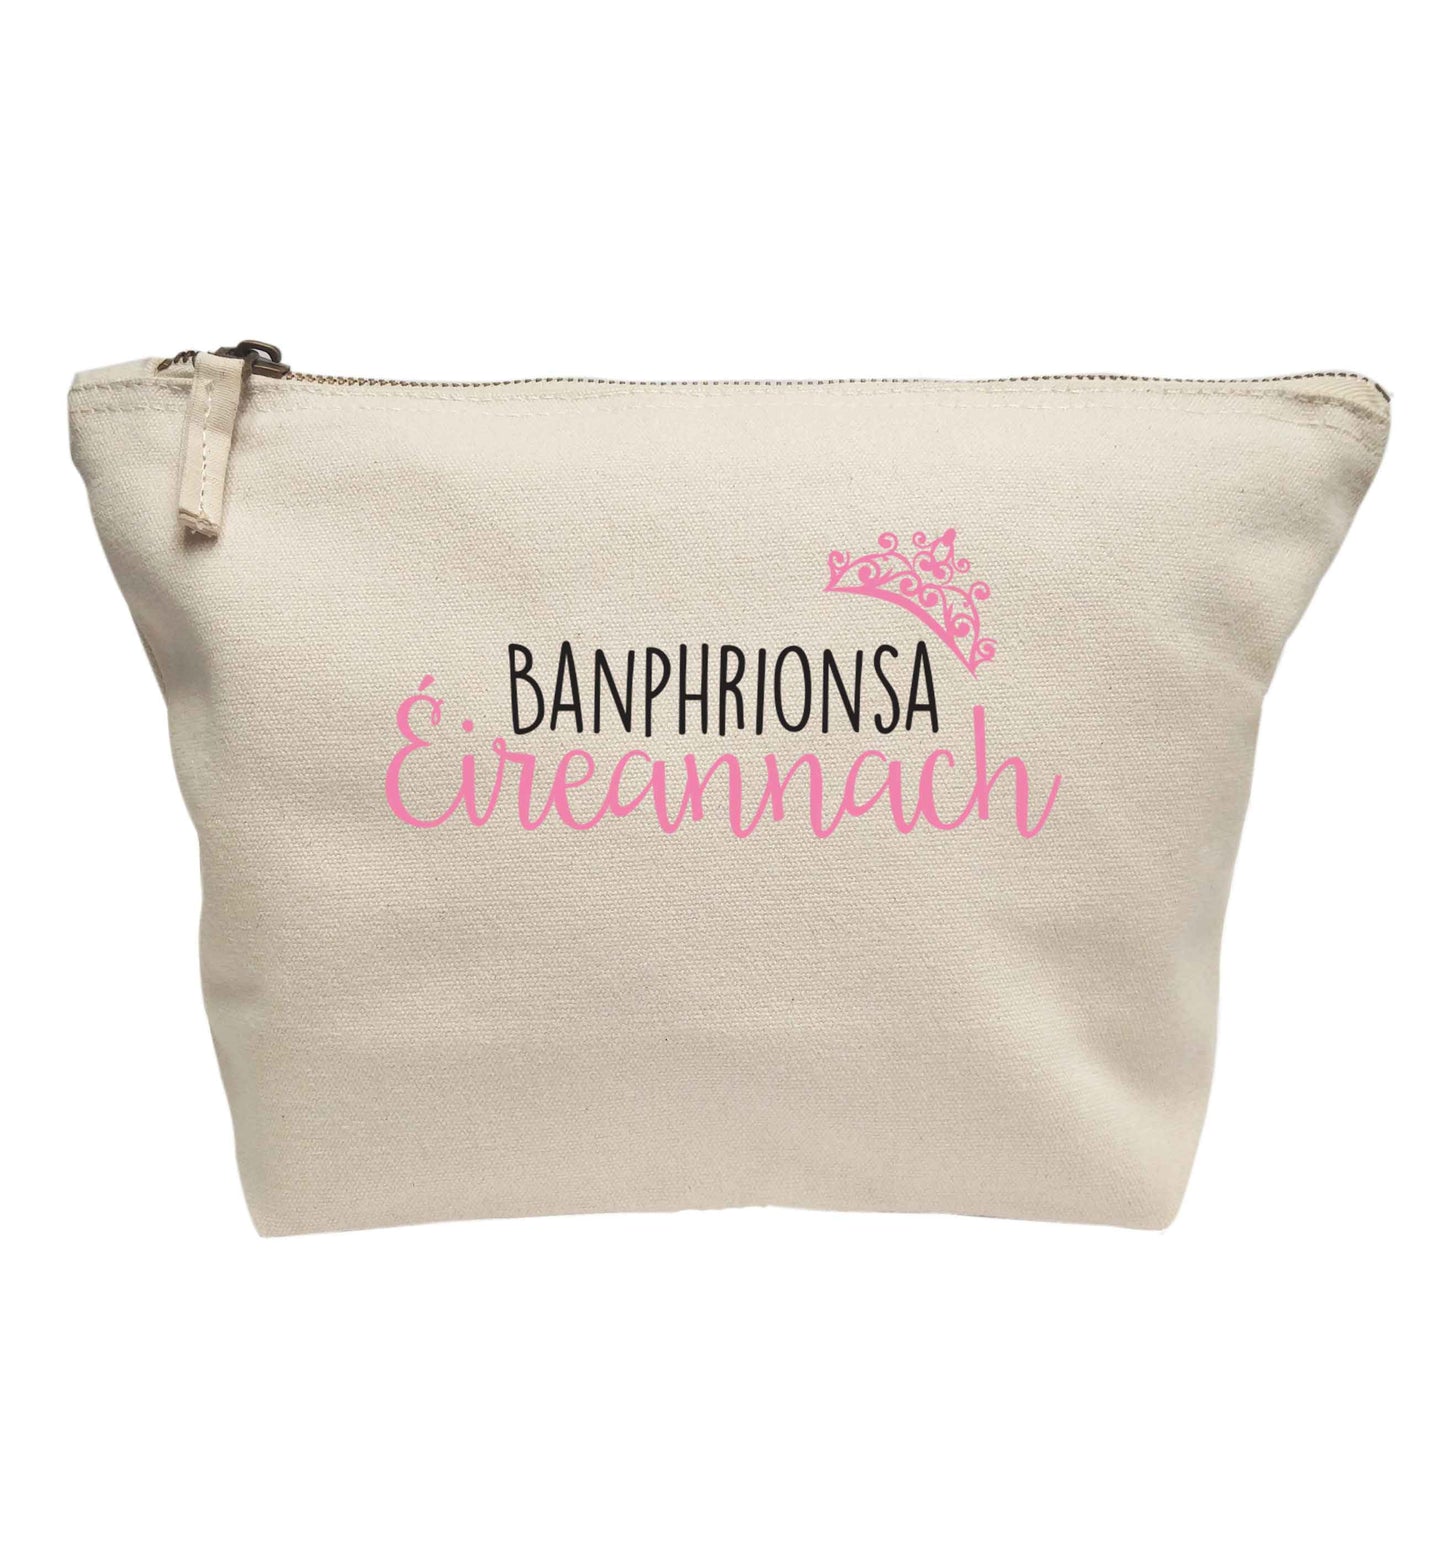 Banphrionsa eireannach | Makeup / wash bag